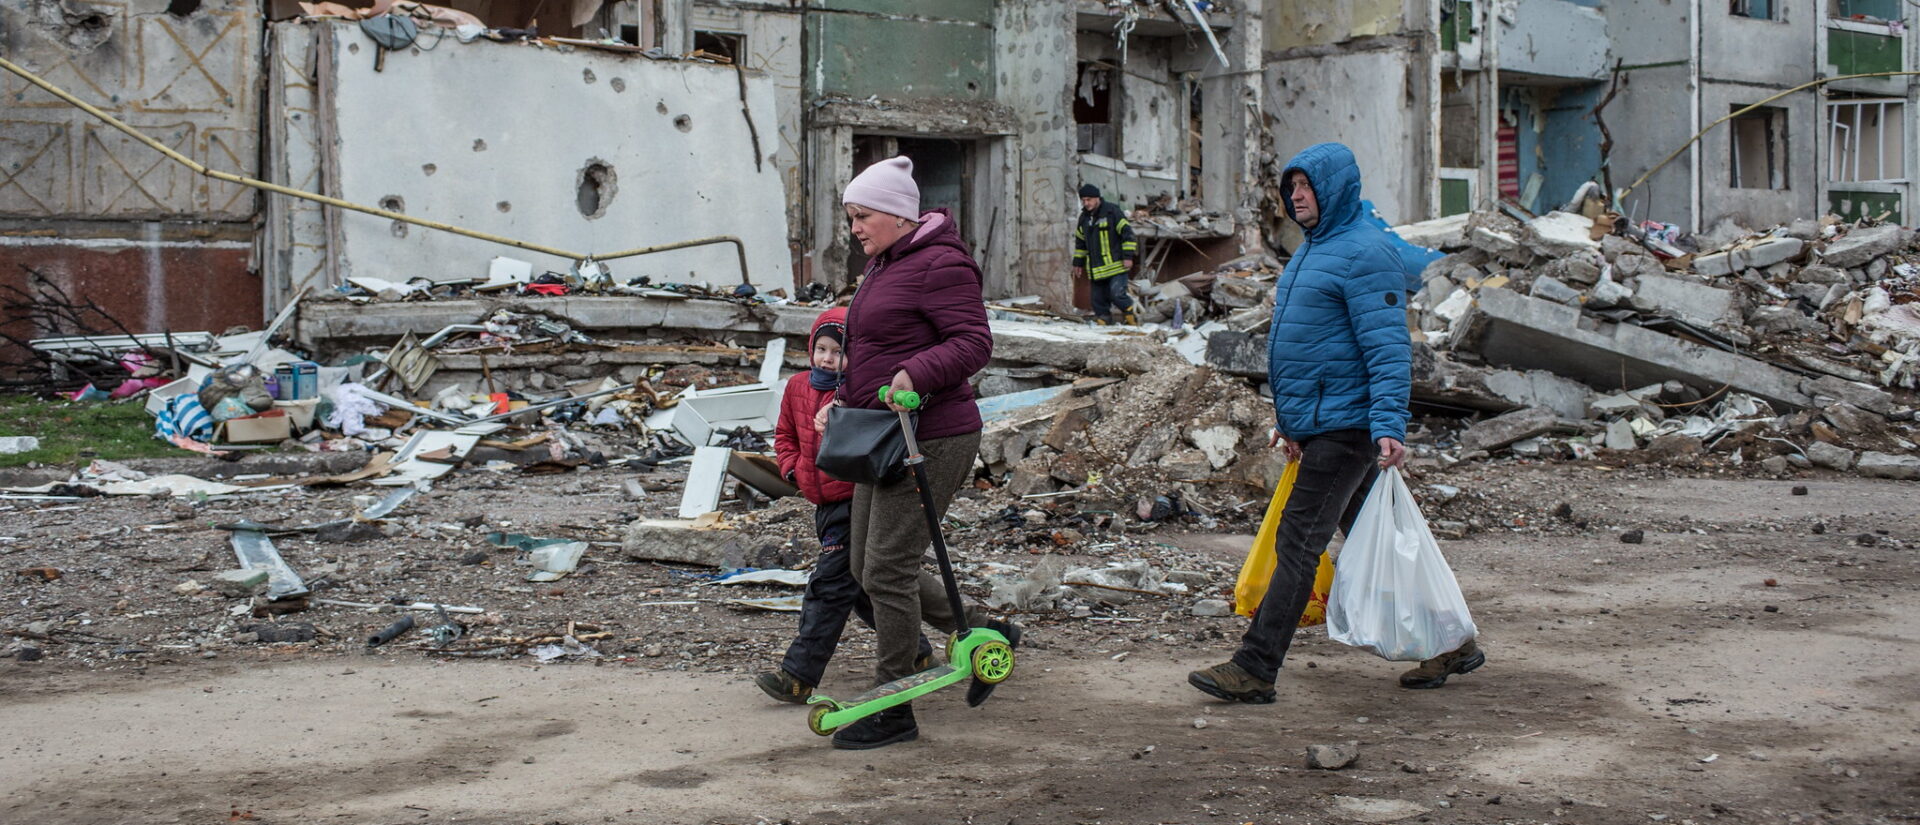 De nombreuses villes d'Ukraine ont été dévastées par les combats | © UNDP Ukraine/Flickr/CC BY-ND 2.0